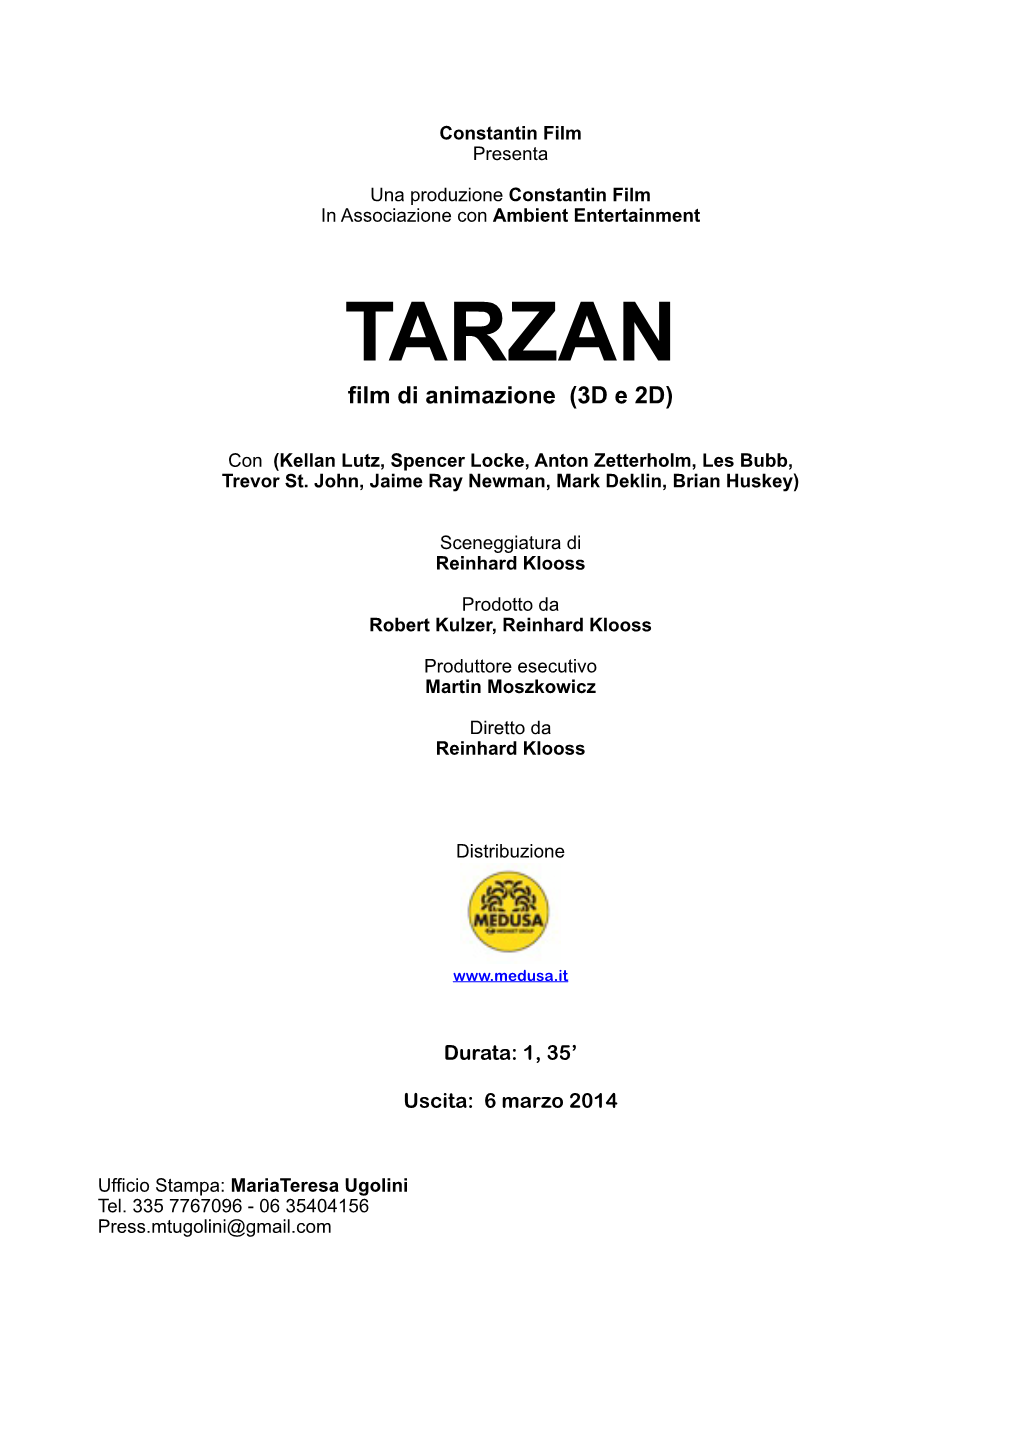 TARZAN Film Di Animazione (3D E 2D)